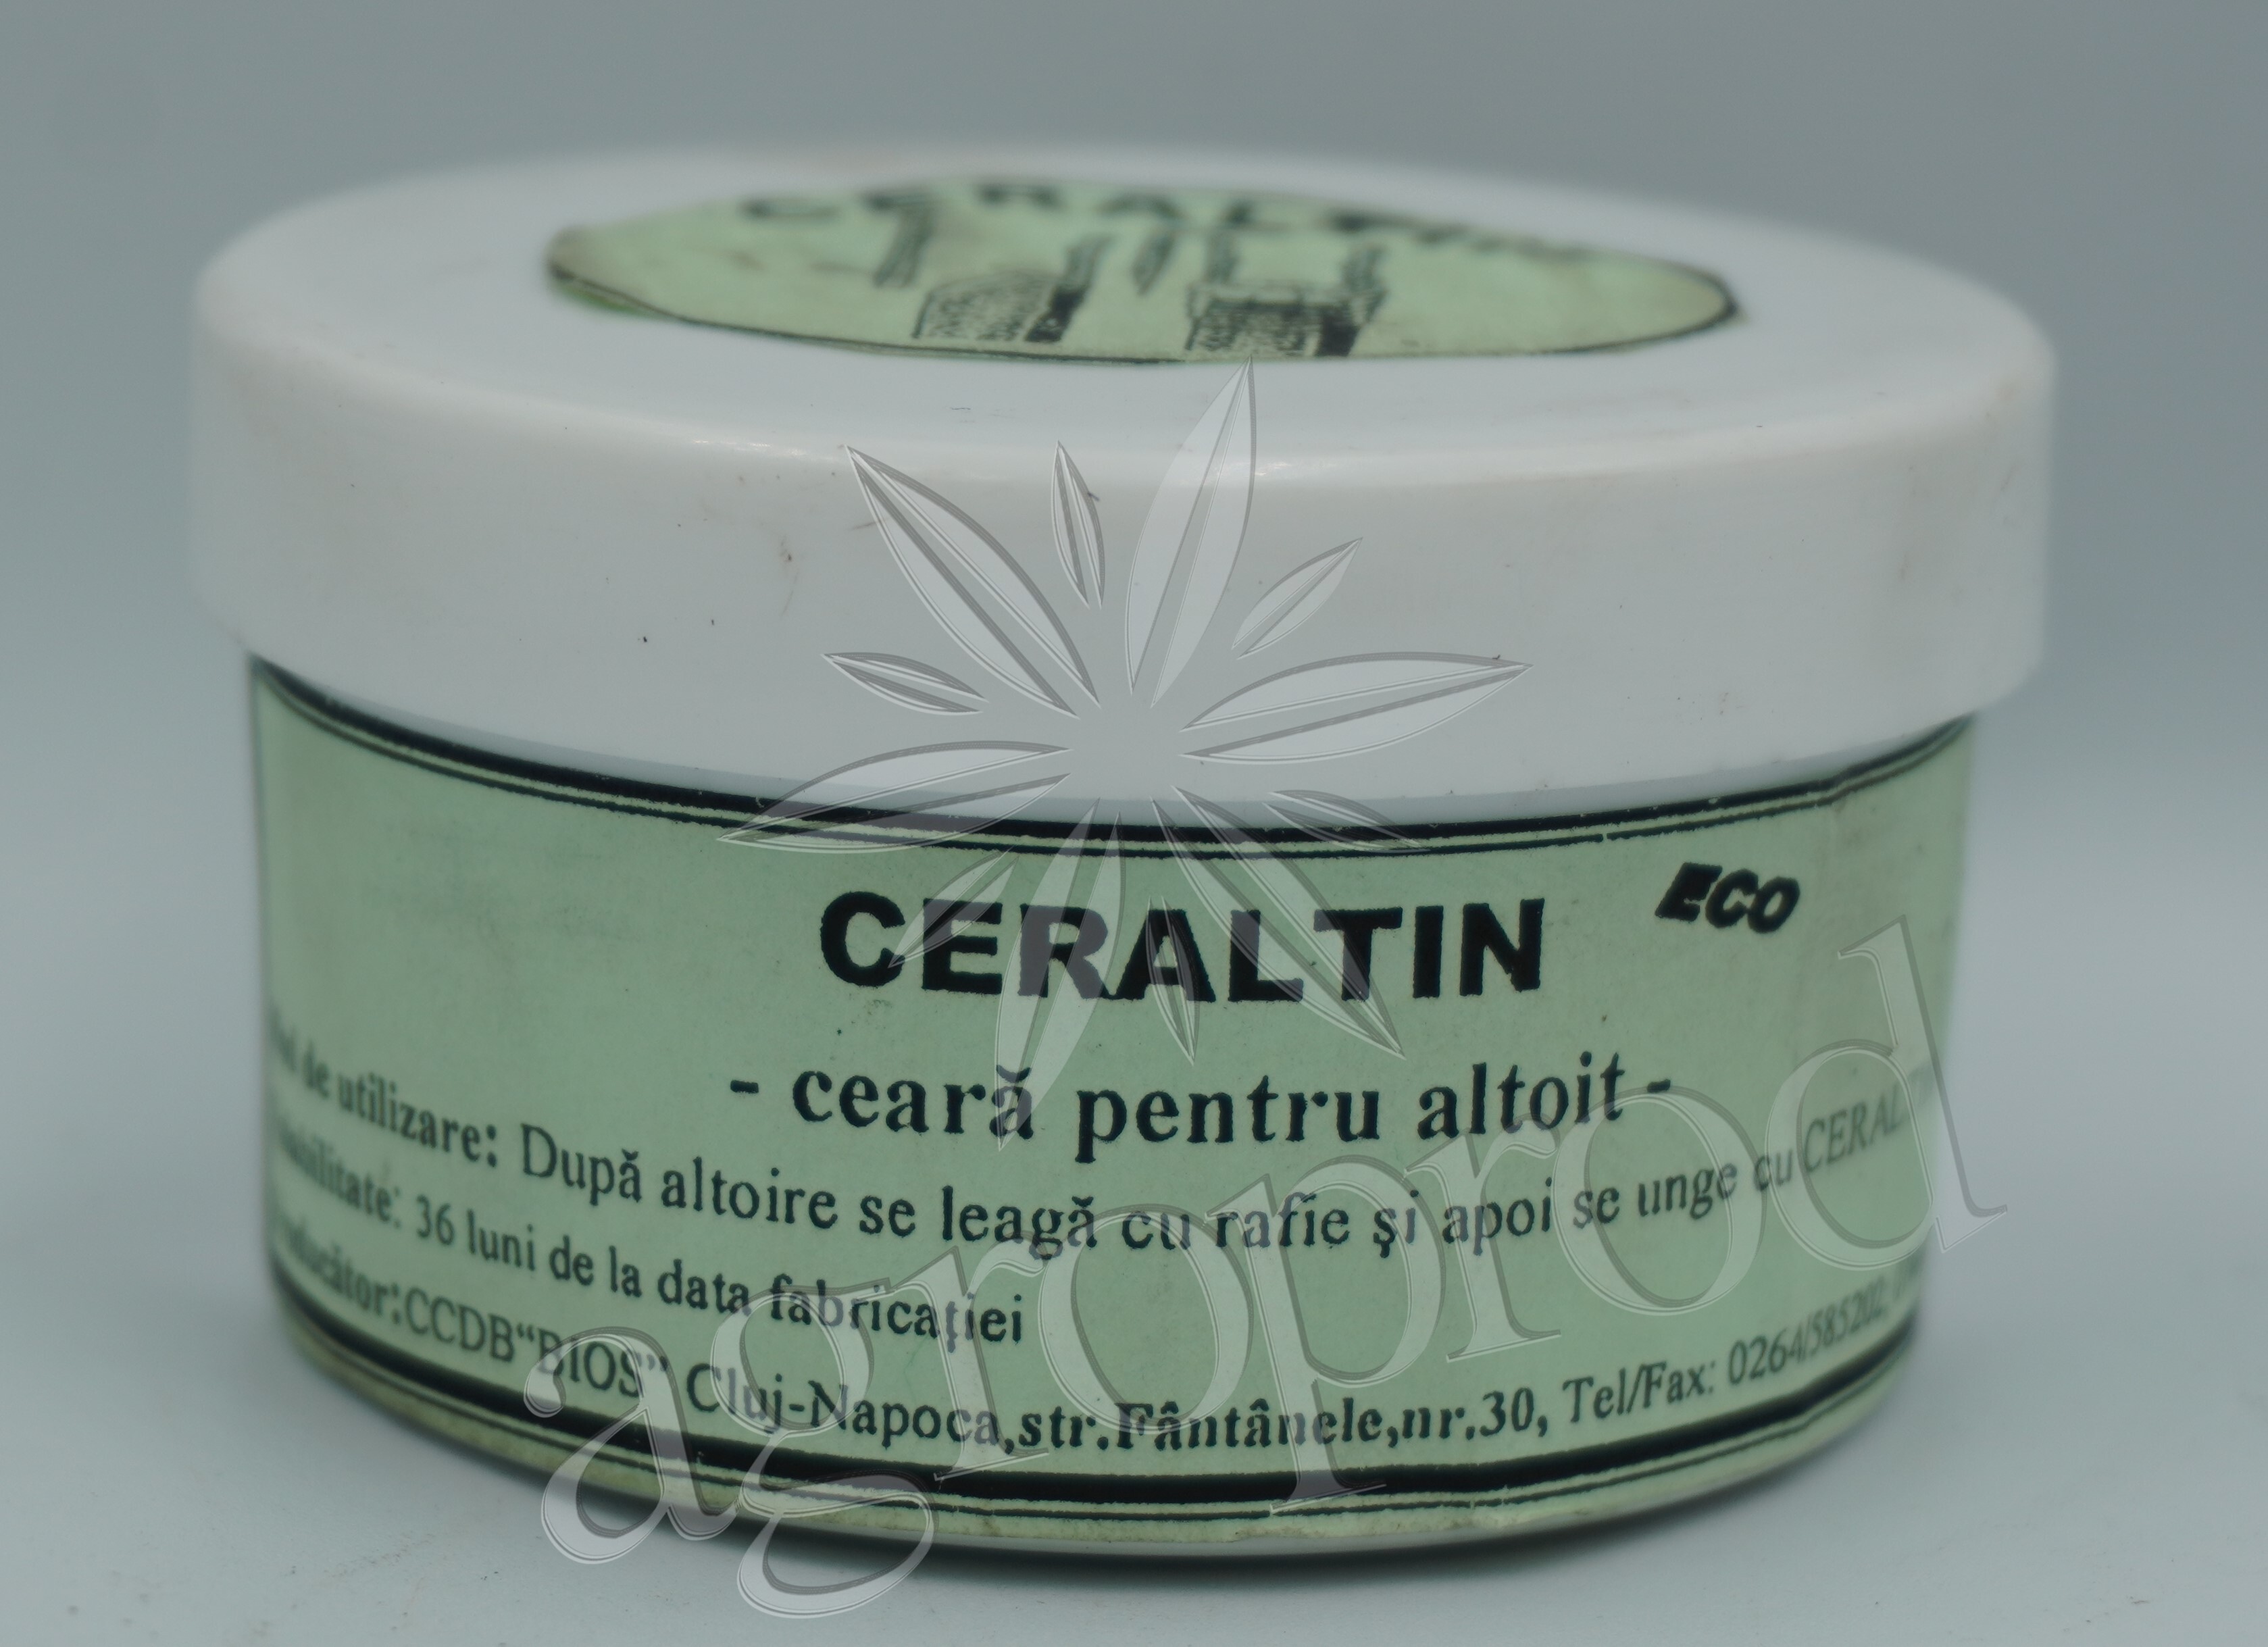 Ceraltin - ceara pentru altoit 100 g